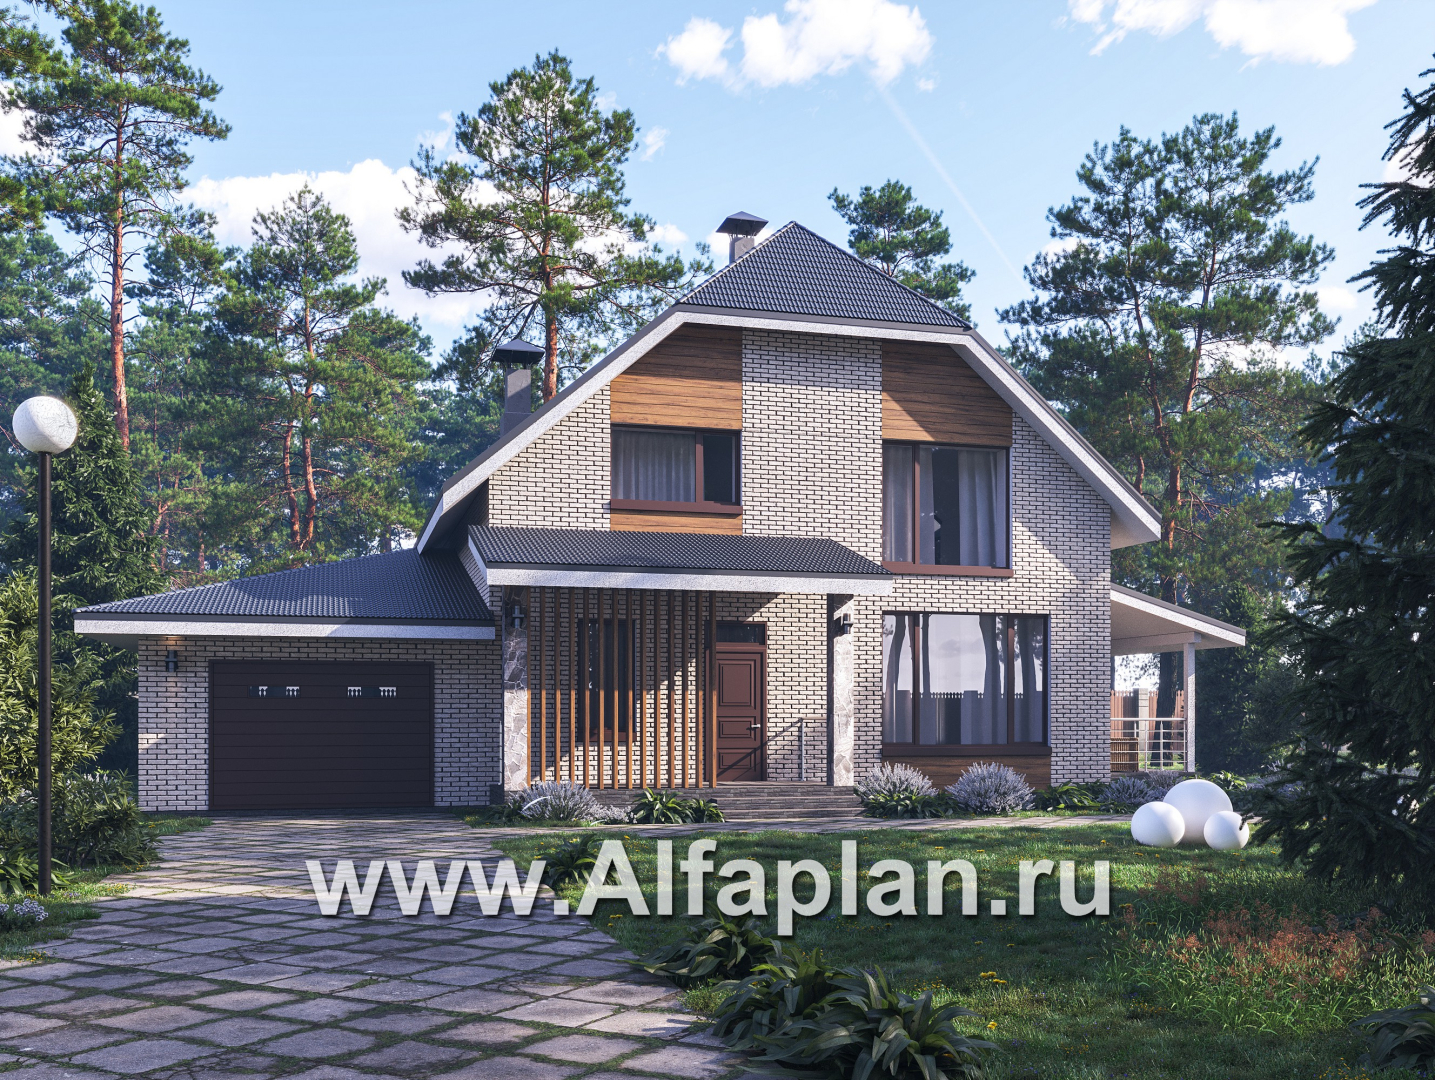 Проекты домов Альфаплан - "Династия" - проект дома с мансардой, мастер спальня, с террасой сбоку и гаражом с мастерской - основное изображение